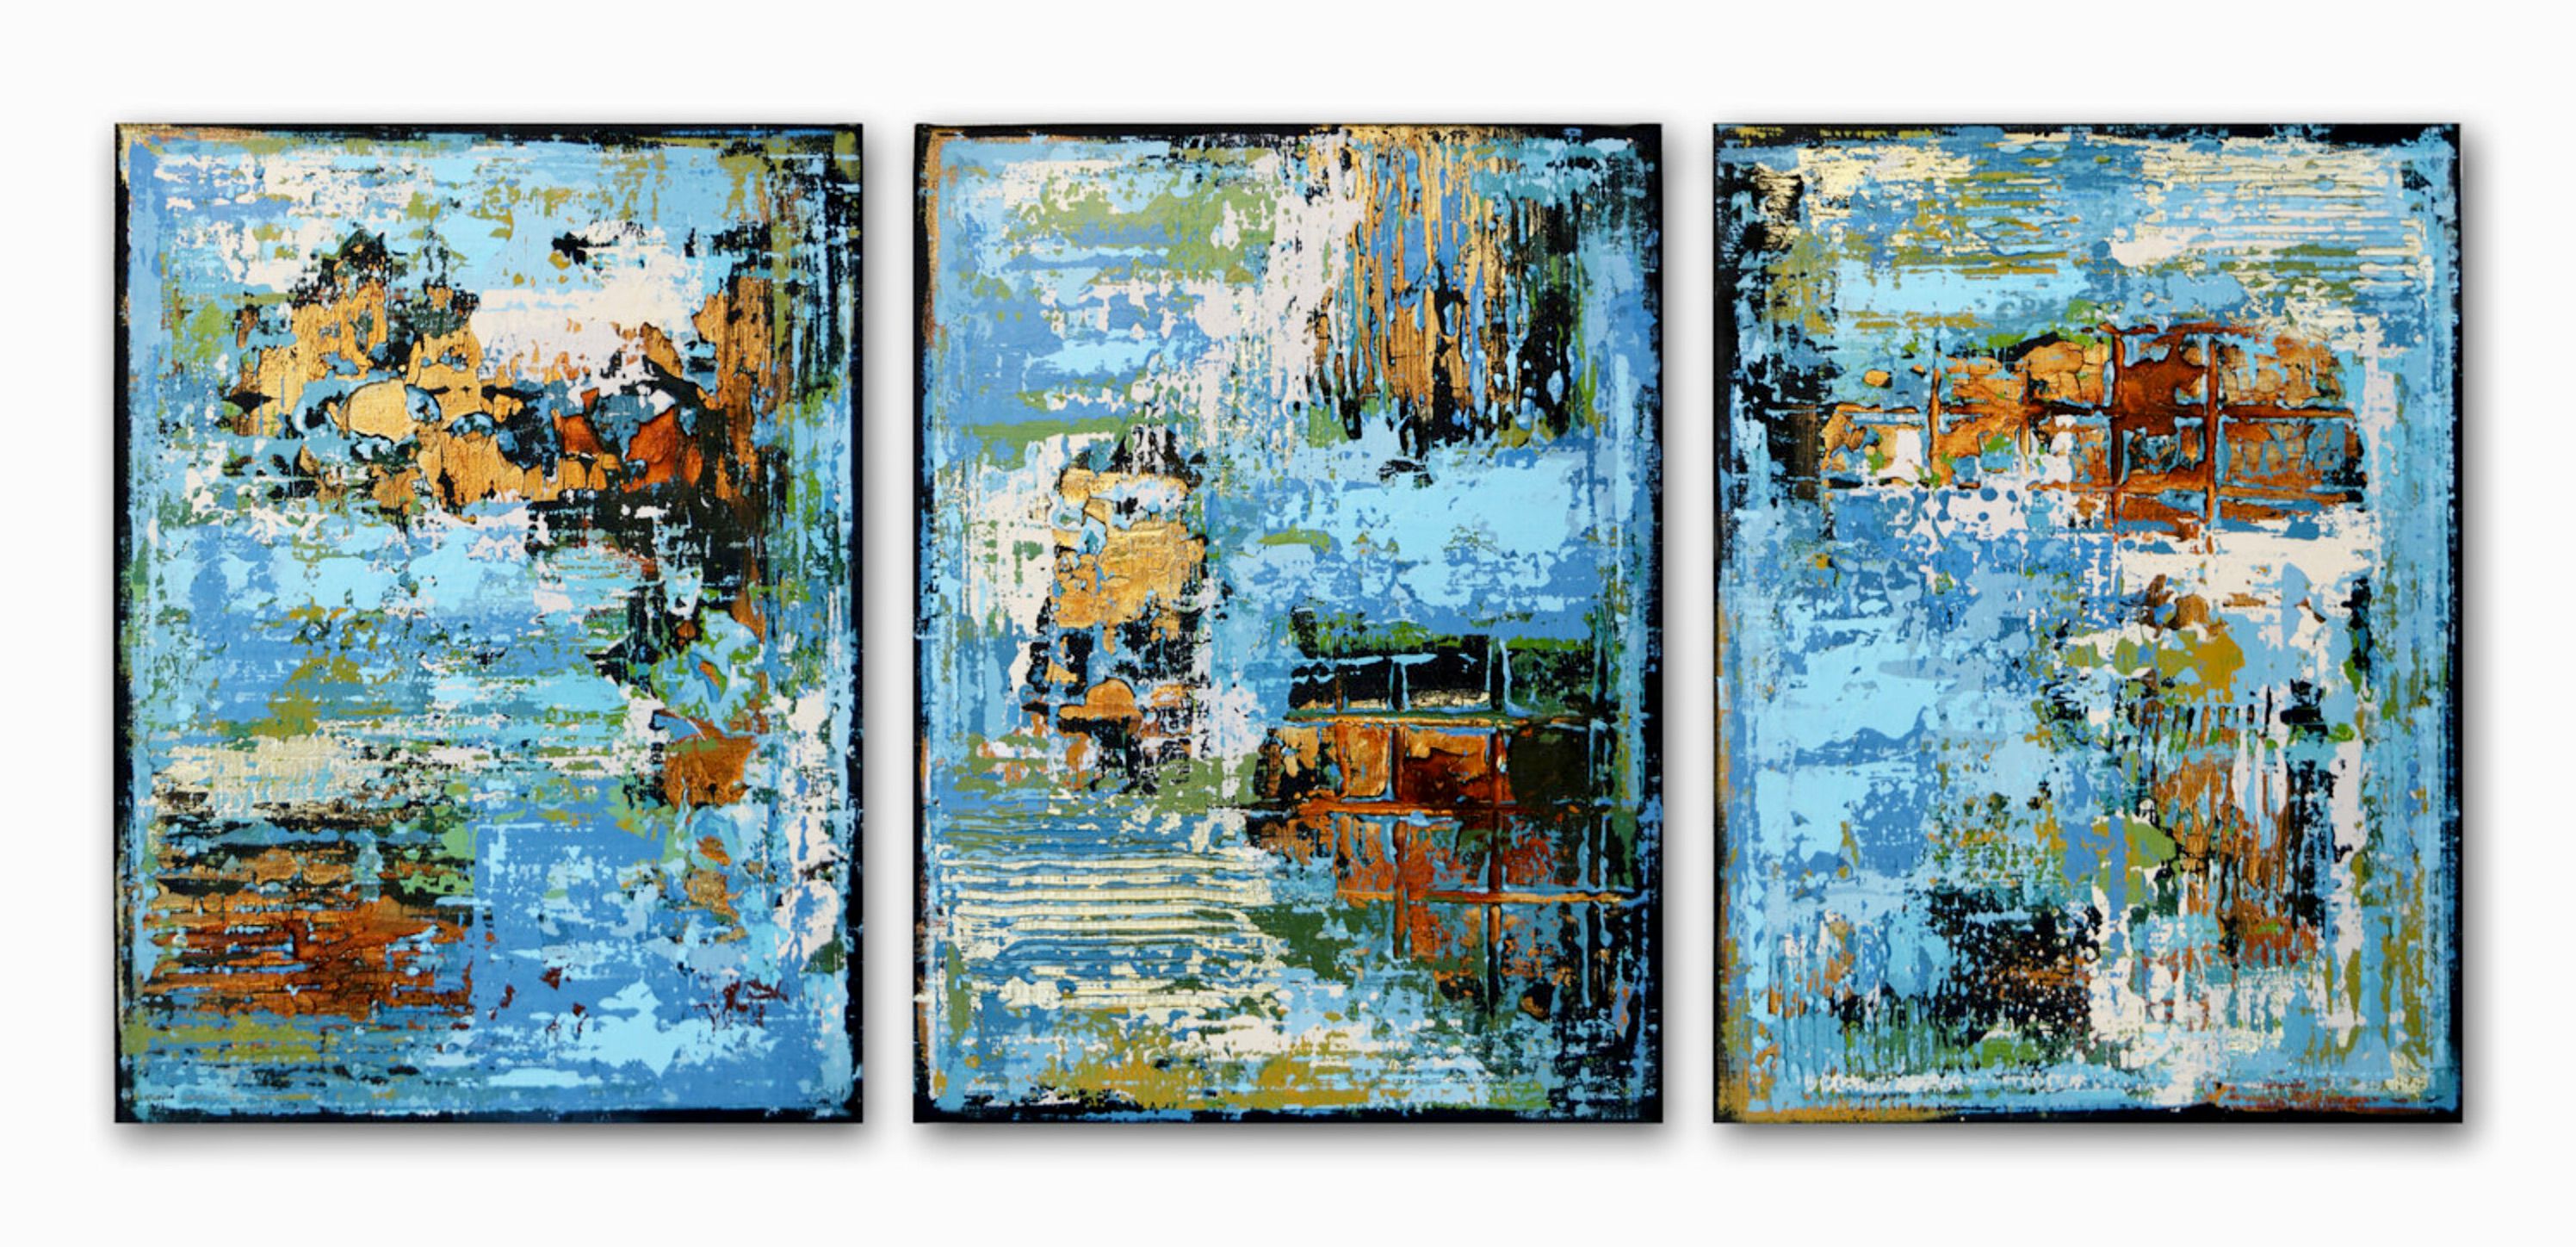 El cuadro abstracto "SINFONÍA DE MEDIANOCHE" de Inez Froehlich consta de 3 partes de 110 x 80 cm. Los colores dominantes son el azul, el turquesa, el blanco, el óxido y el dorado. El estilo del cuadro es shabby chic, estilo industrial, vintage, retro, interior bohemio.